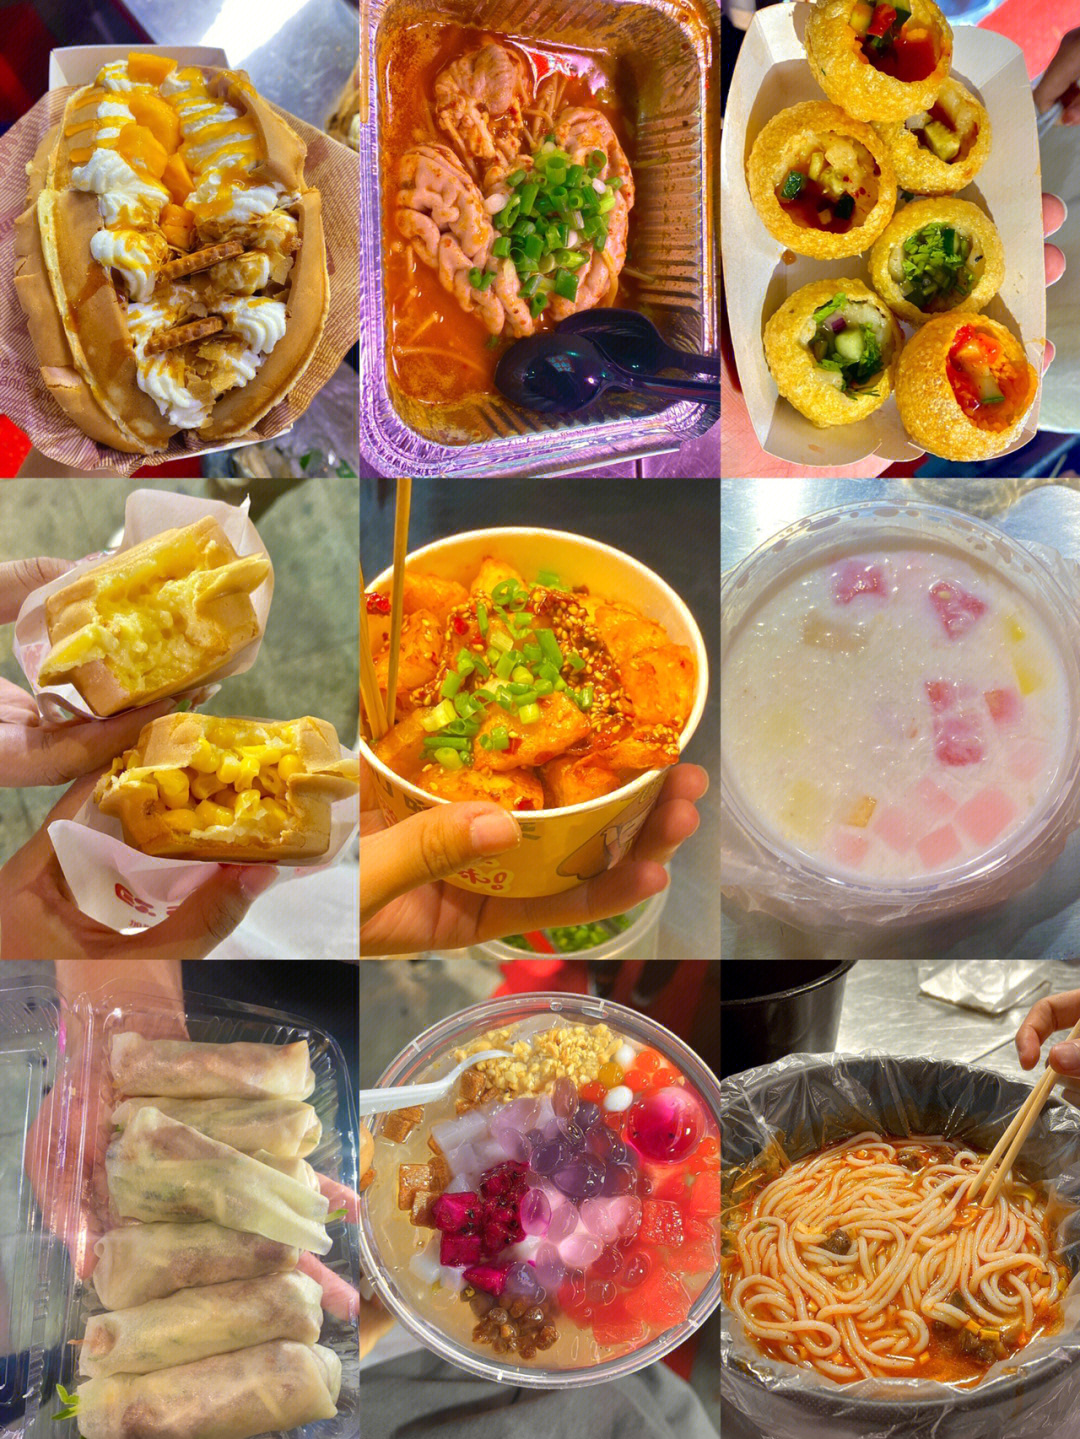 青岛美食排行榜前十名图片